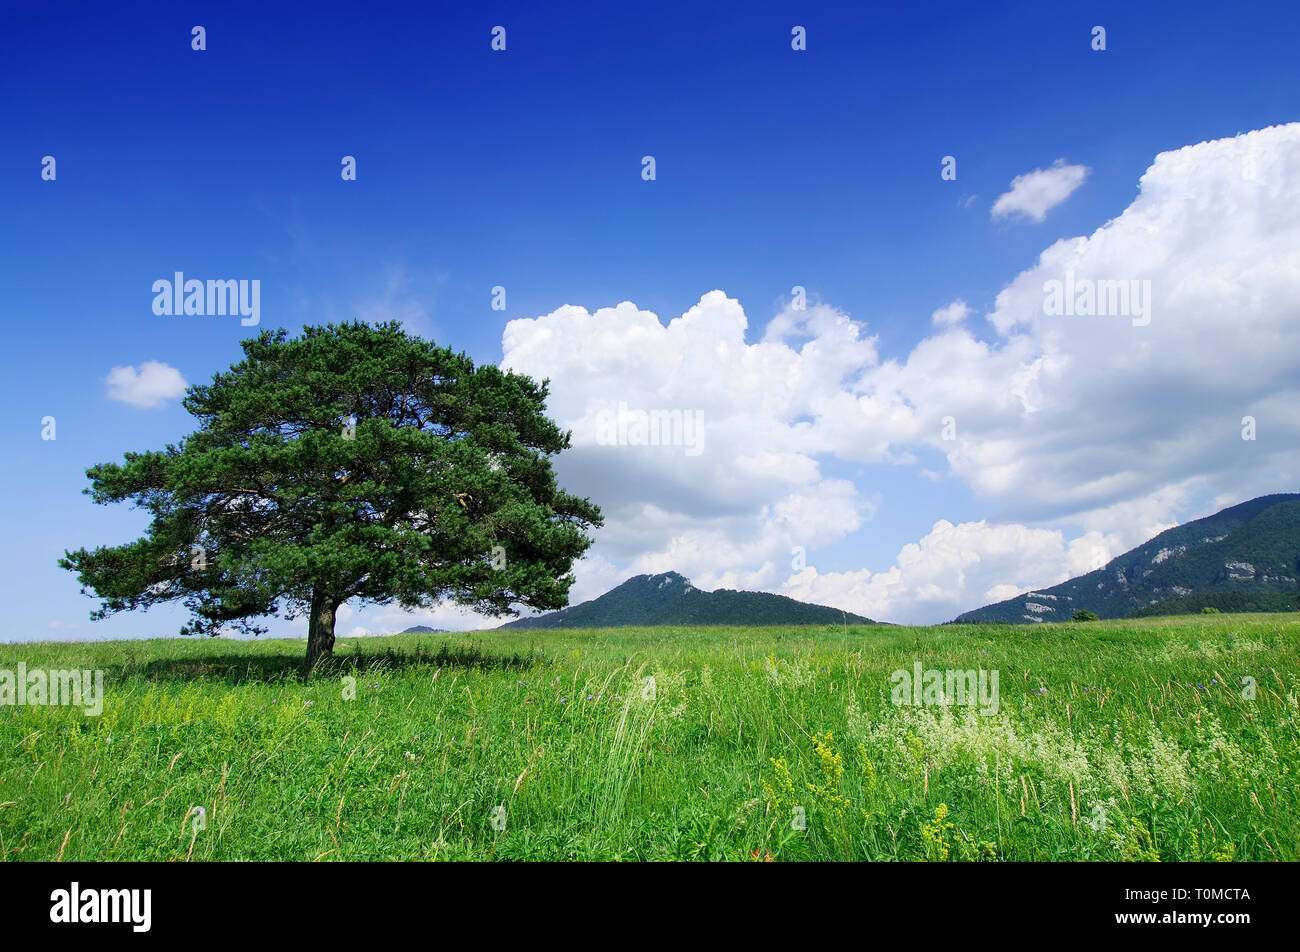 Paesaggio, albero solitario sul campo verde, cielo blu e nuvole bianche in background Foto Stock